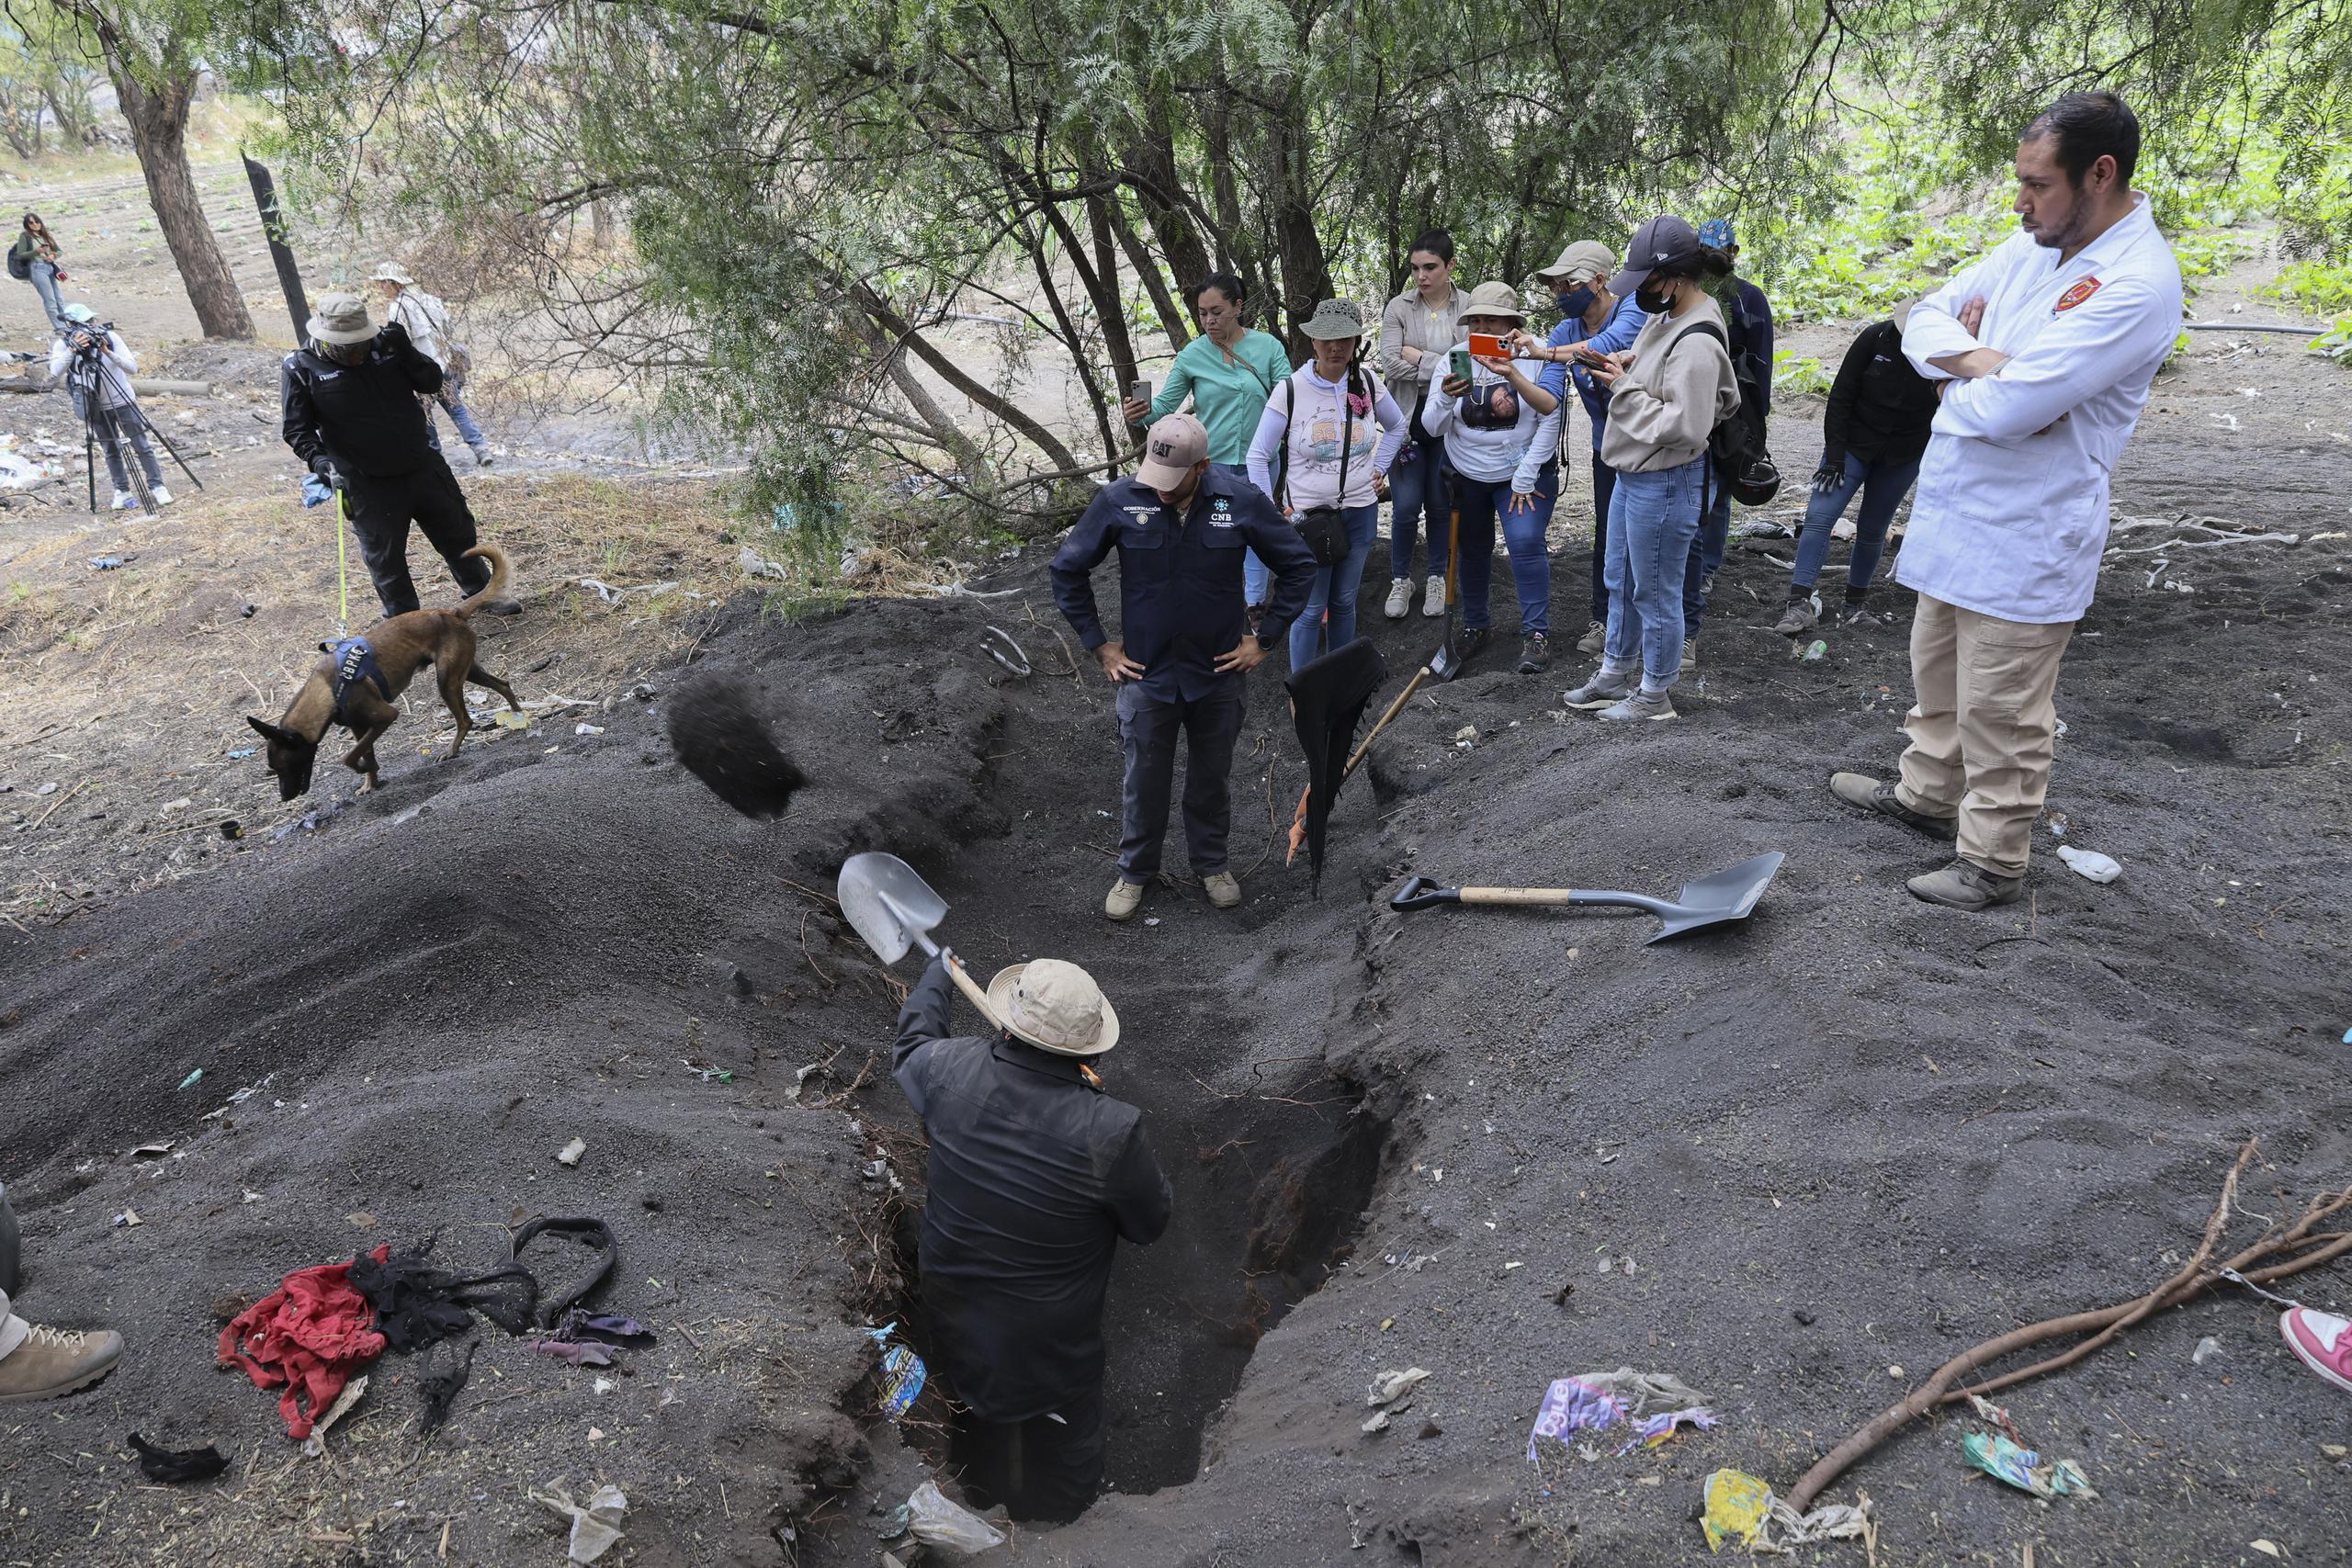 El fiscal de Ciudad de México dijo que los expertos estaban investigando para determinar la naturaleza de los restos encontrados y si eran humanos.